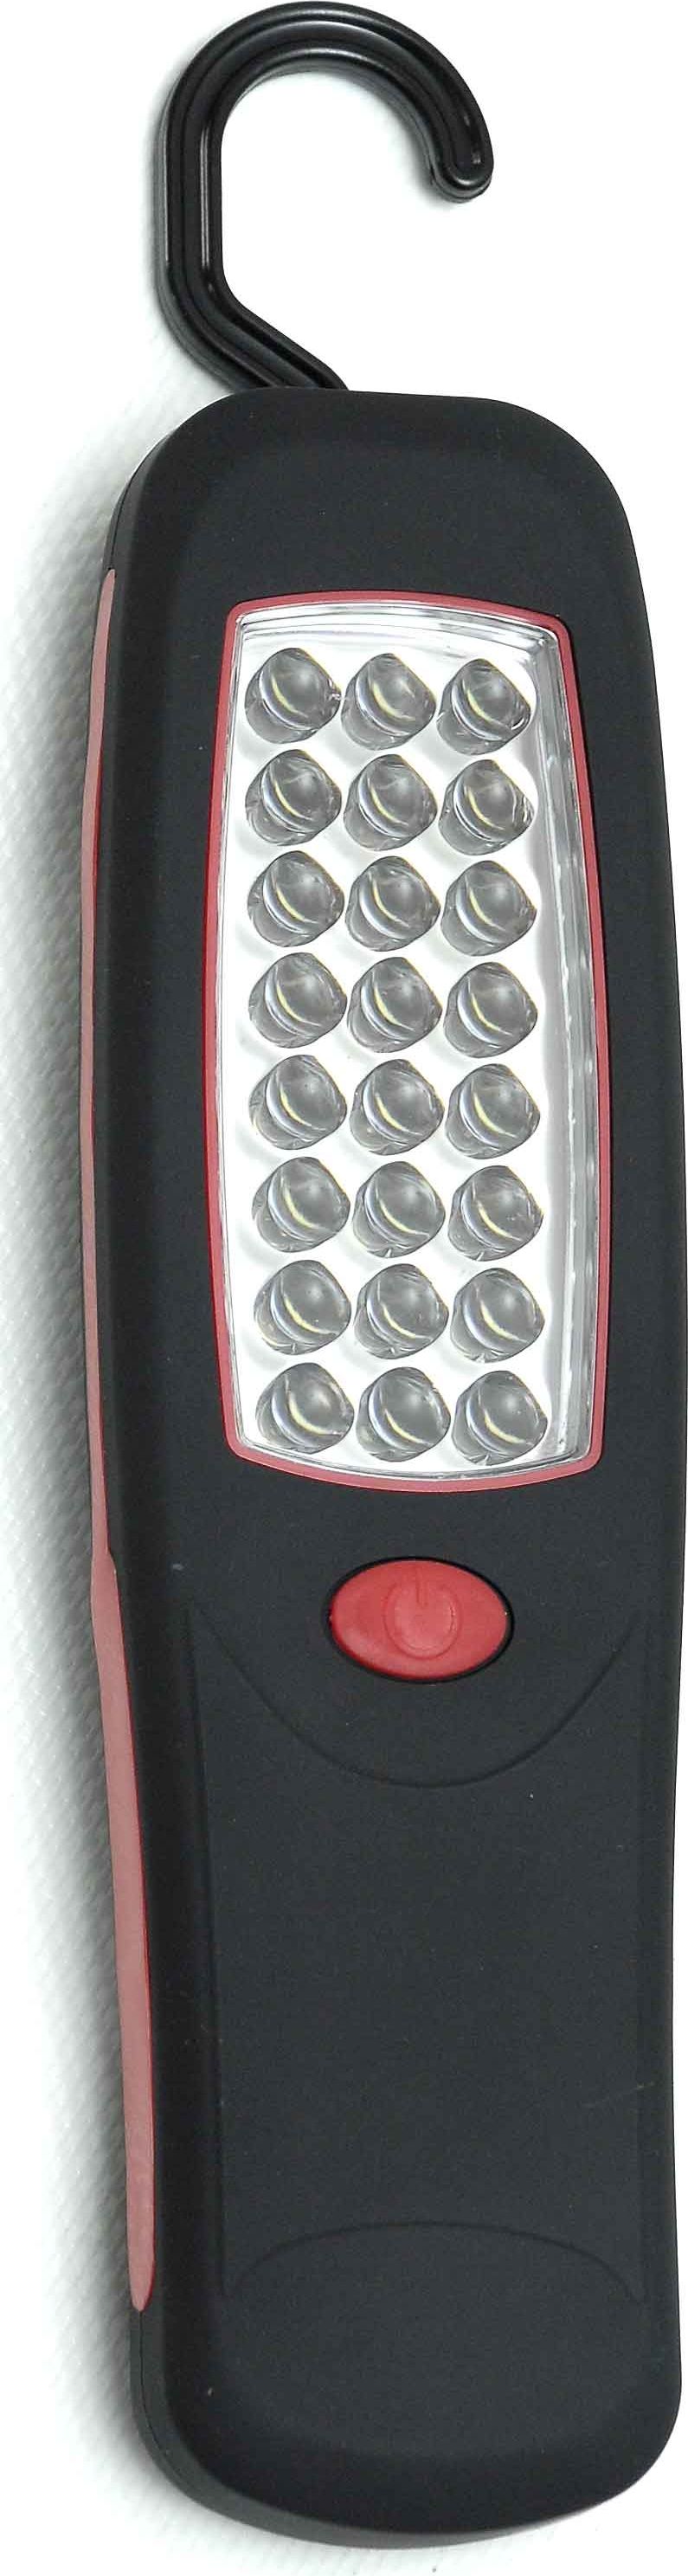 Φακός με χειρολαβή 24 LED